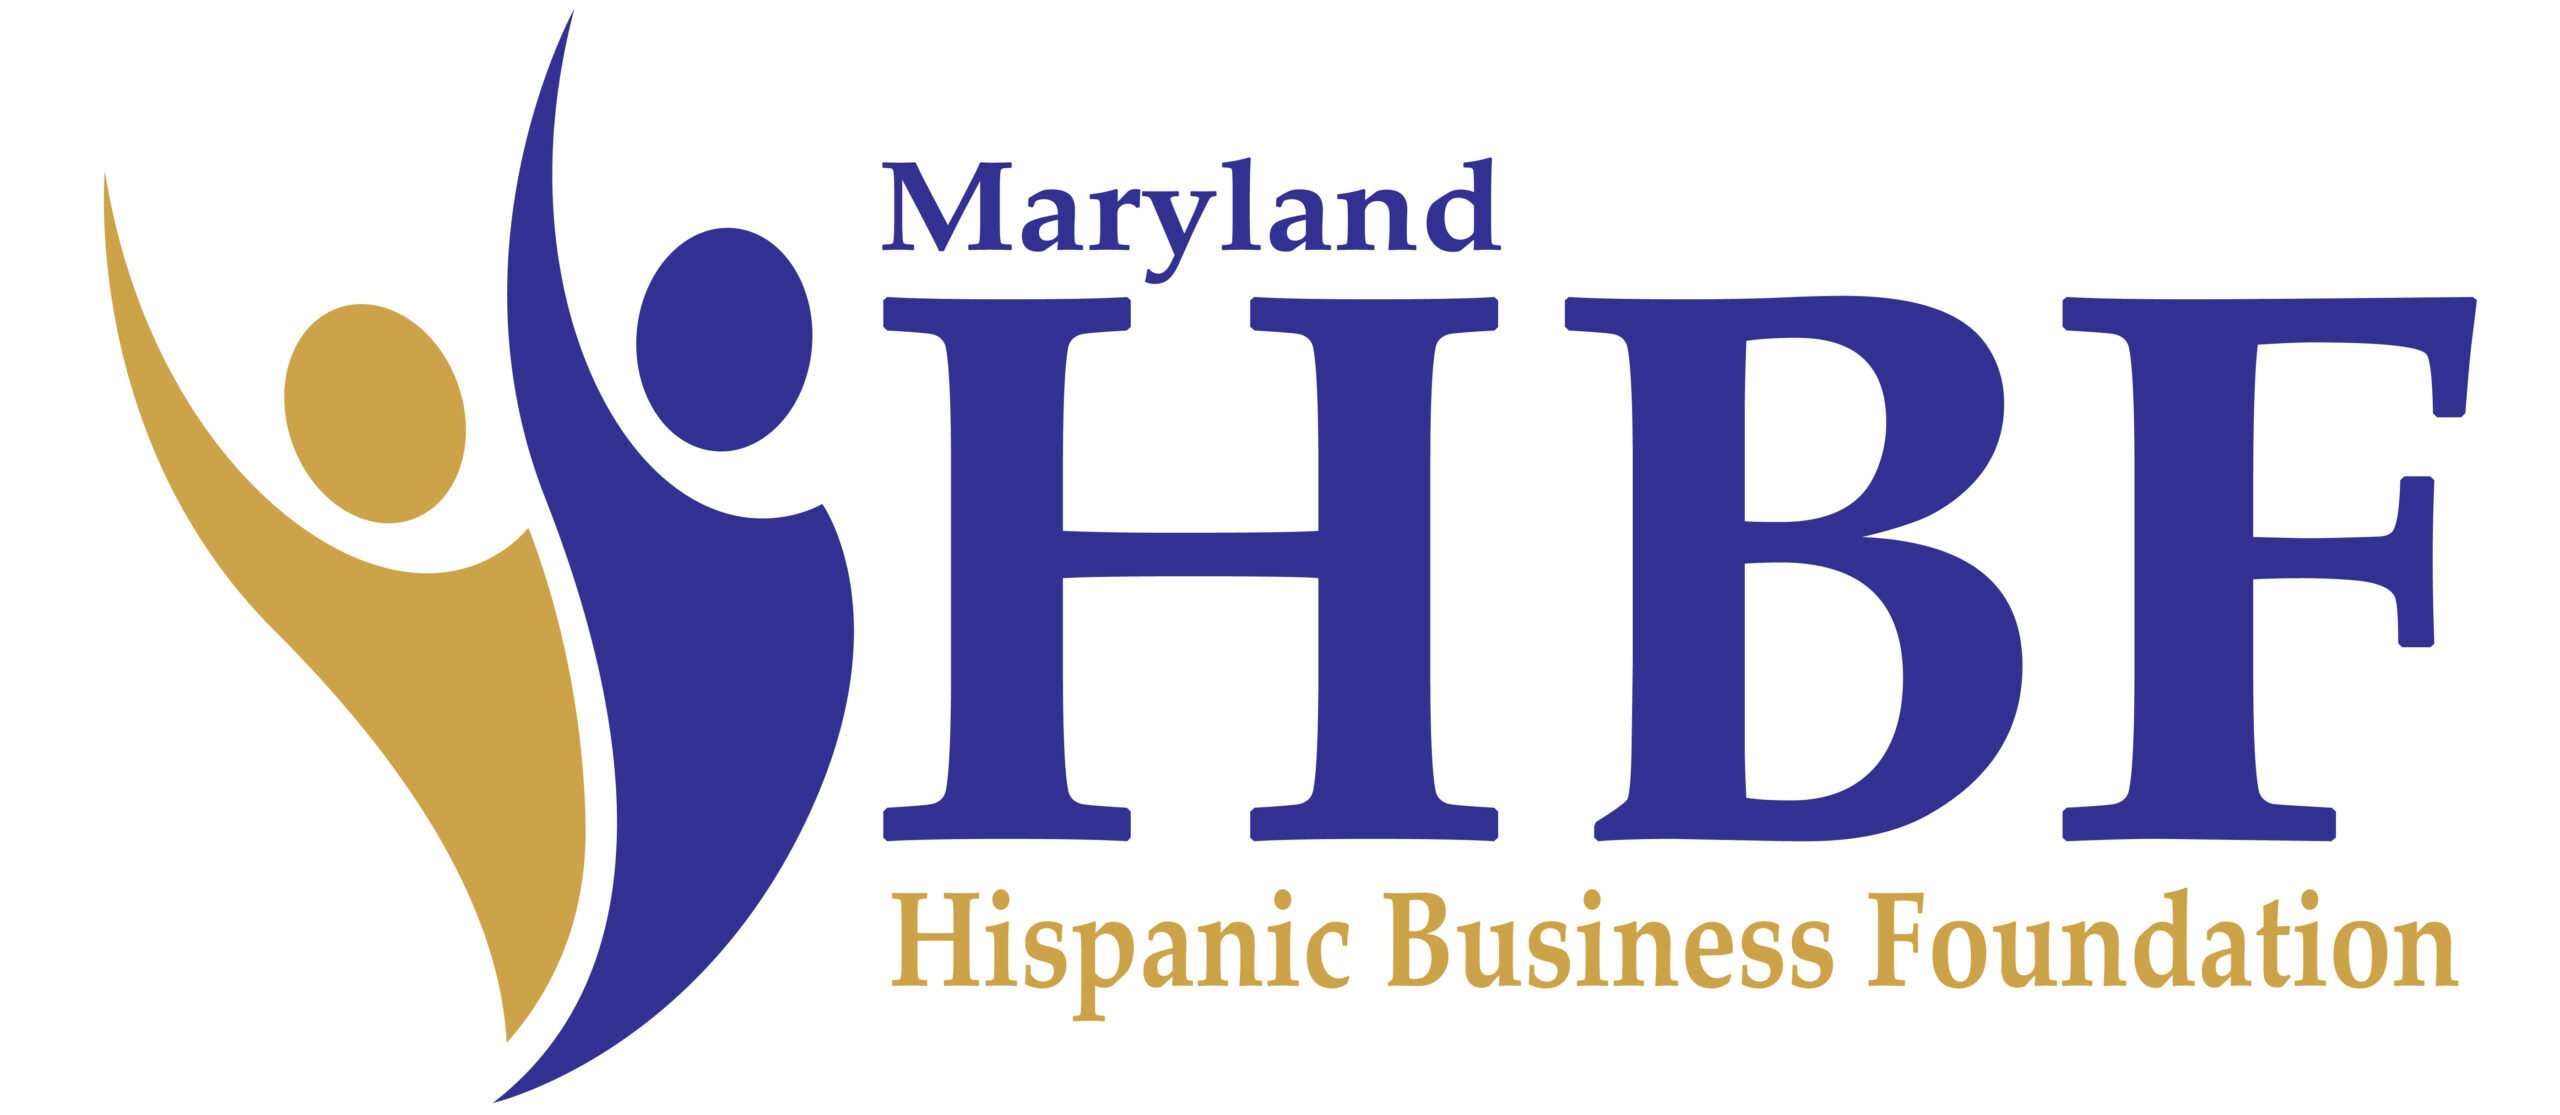 Hispanic Business Foundation of Maryland